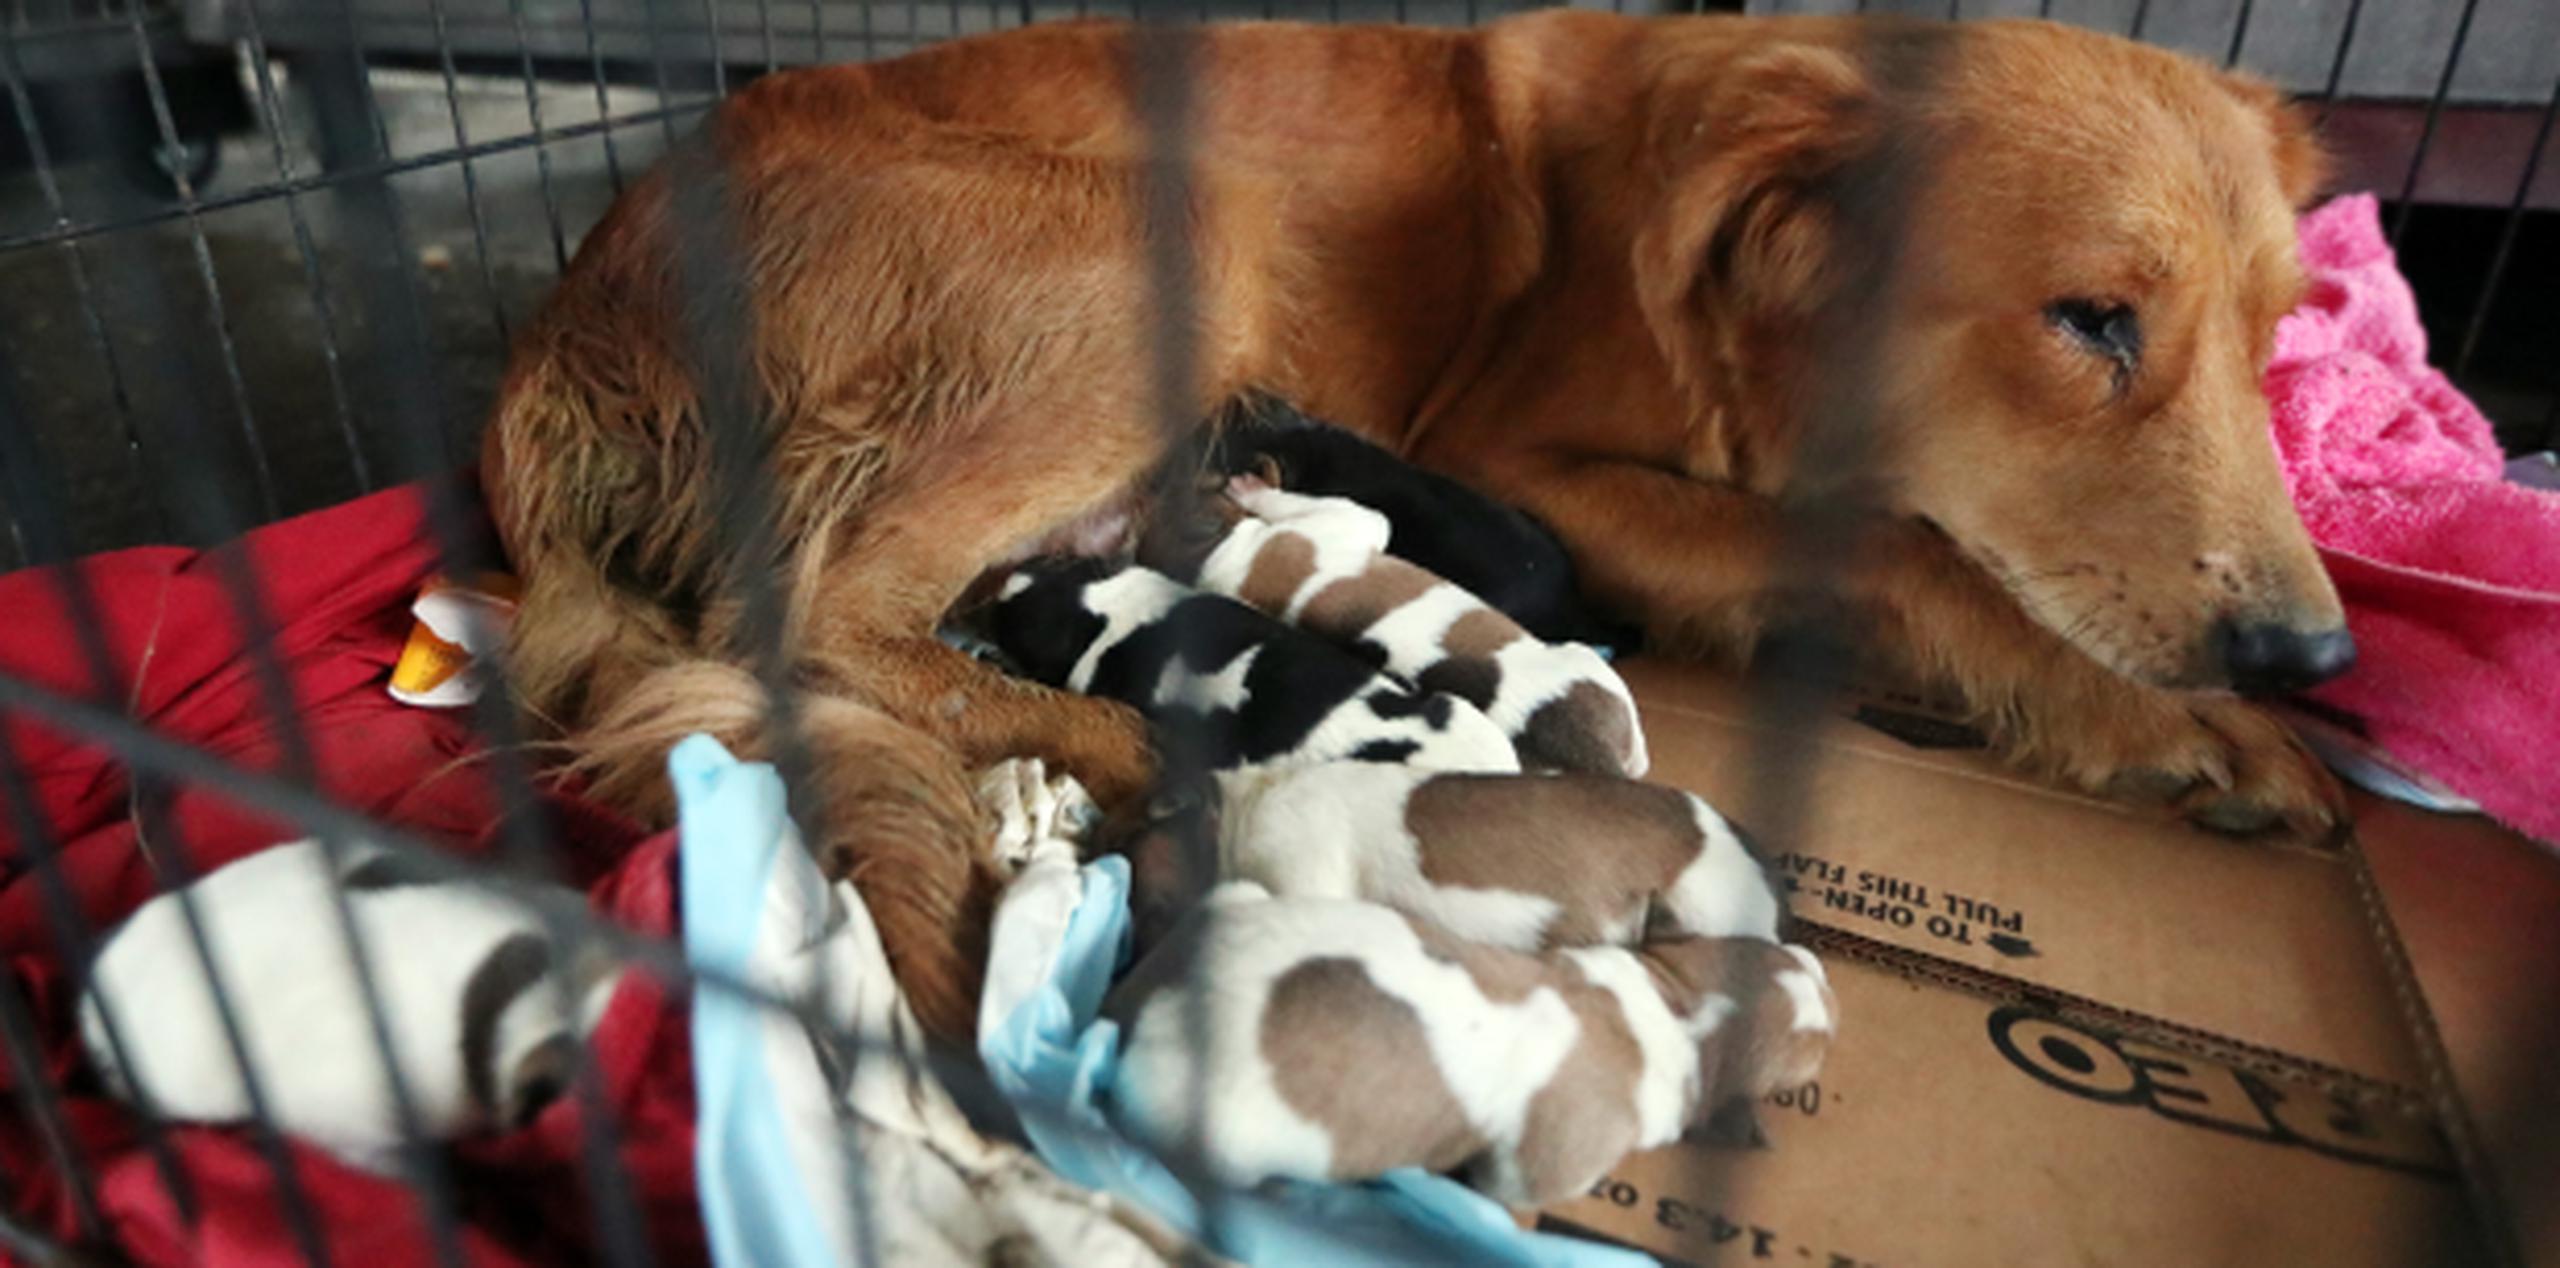 Una perra parió sus seis cachorros y todos están vivos de milagro tras nacer hoy, día en que pasa cerca de Puerto Rico un huracán categoría 5. (JUAN.MARTINEZ@GFRMEDIA.COM)